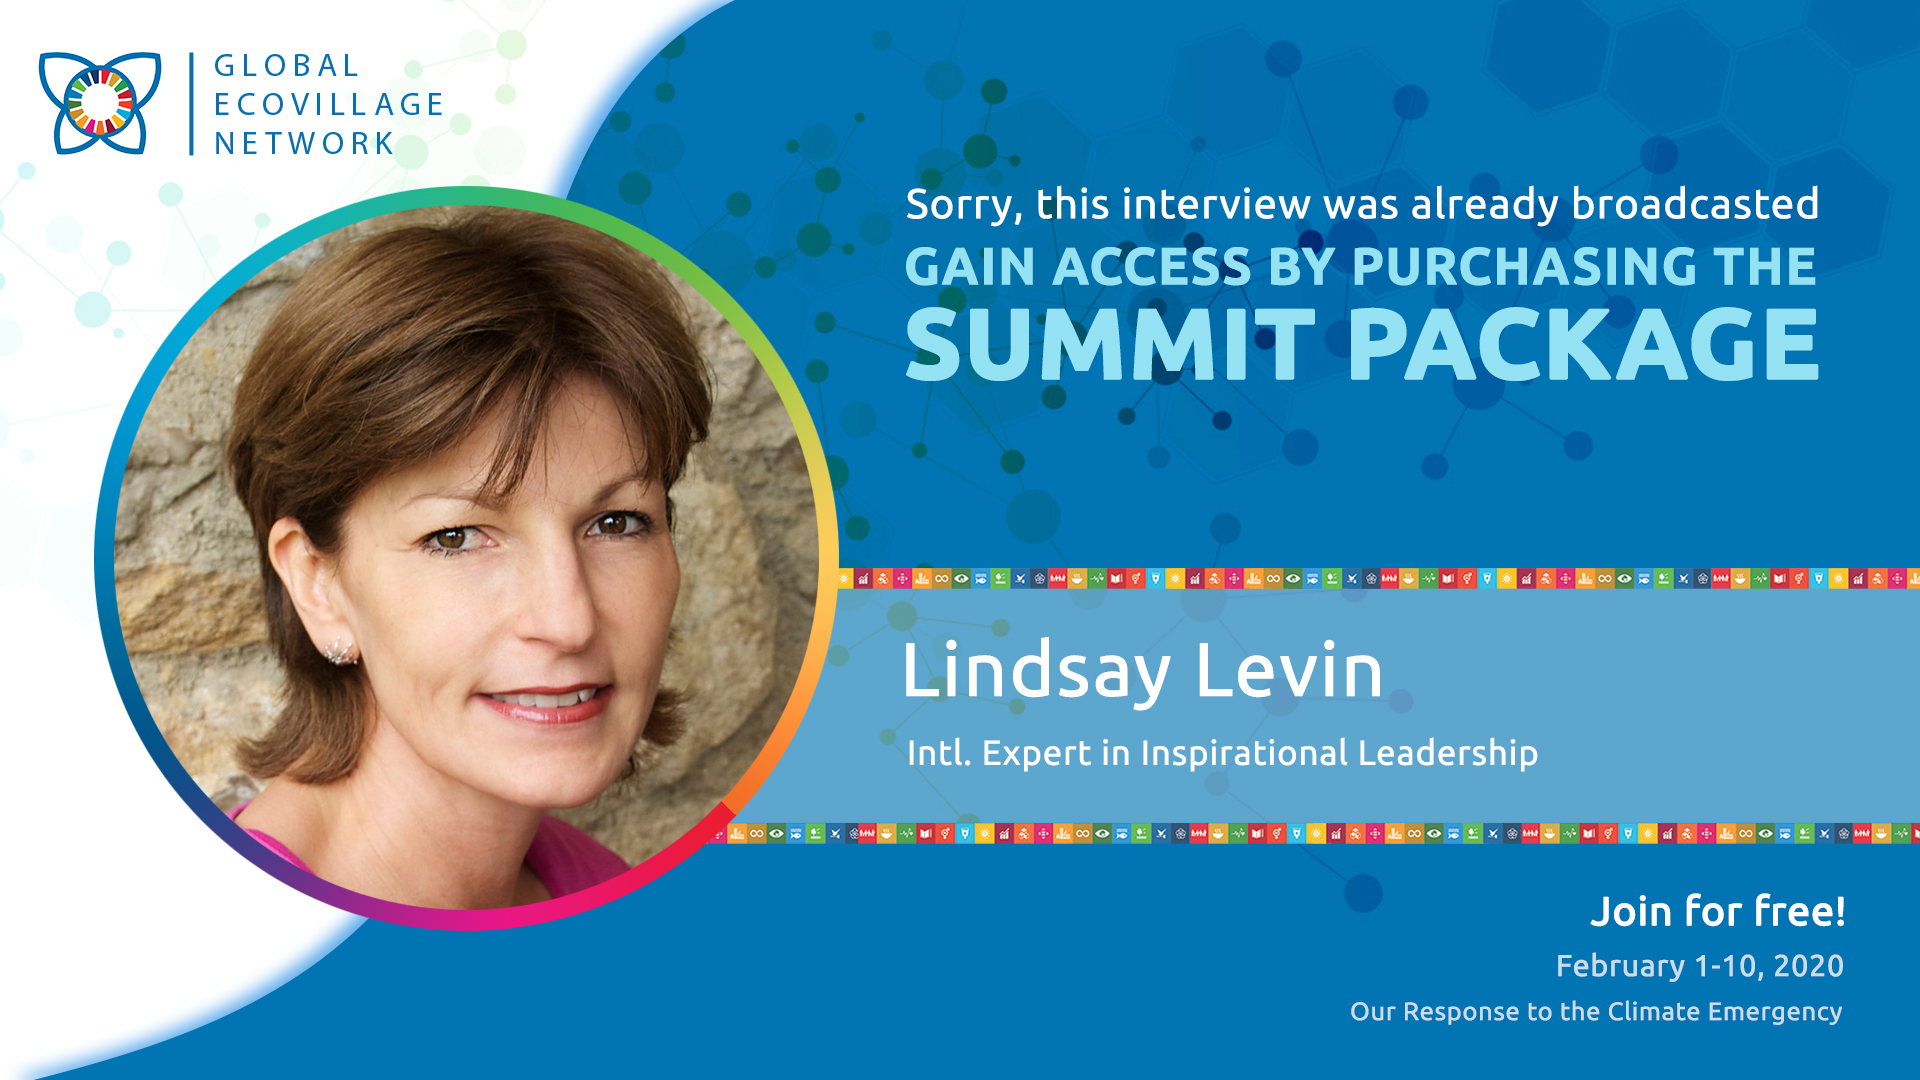 Lindsay Levin